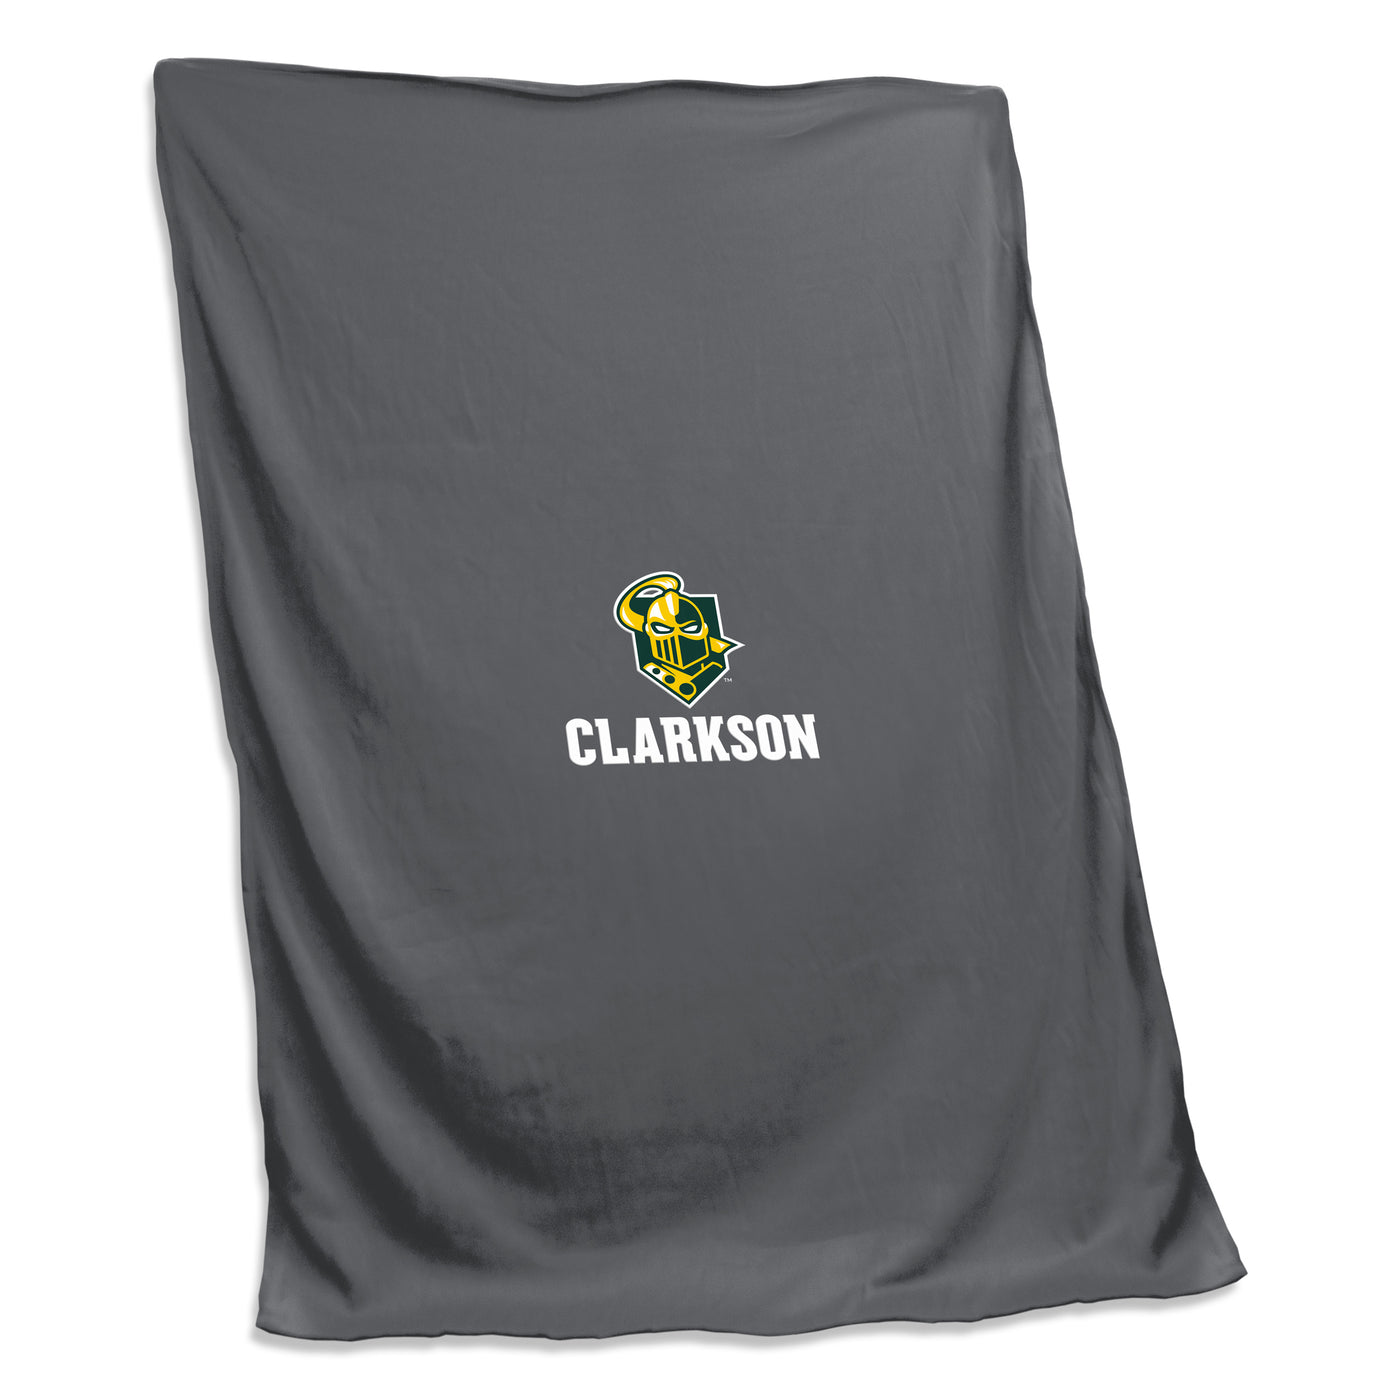 Clarkson University Charcoal  Screened  Sweatshirt Blanket